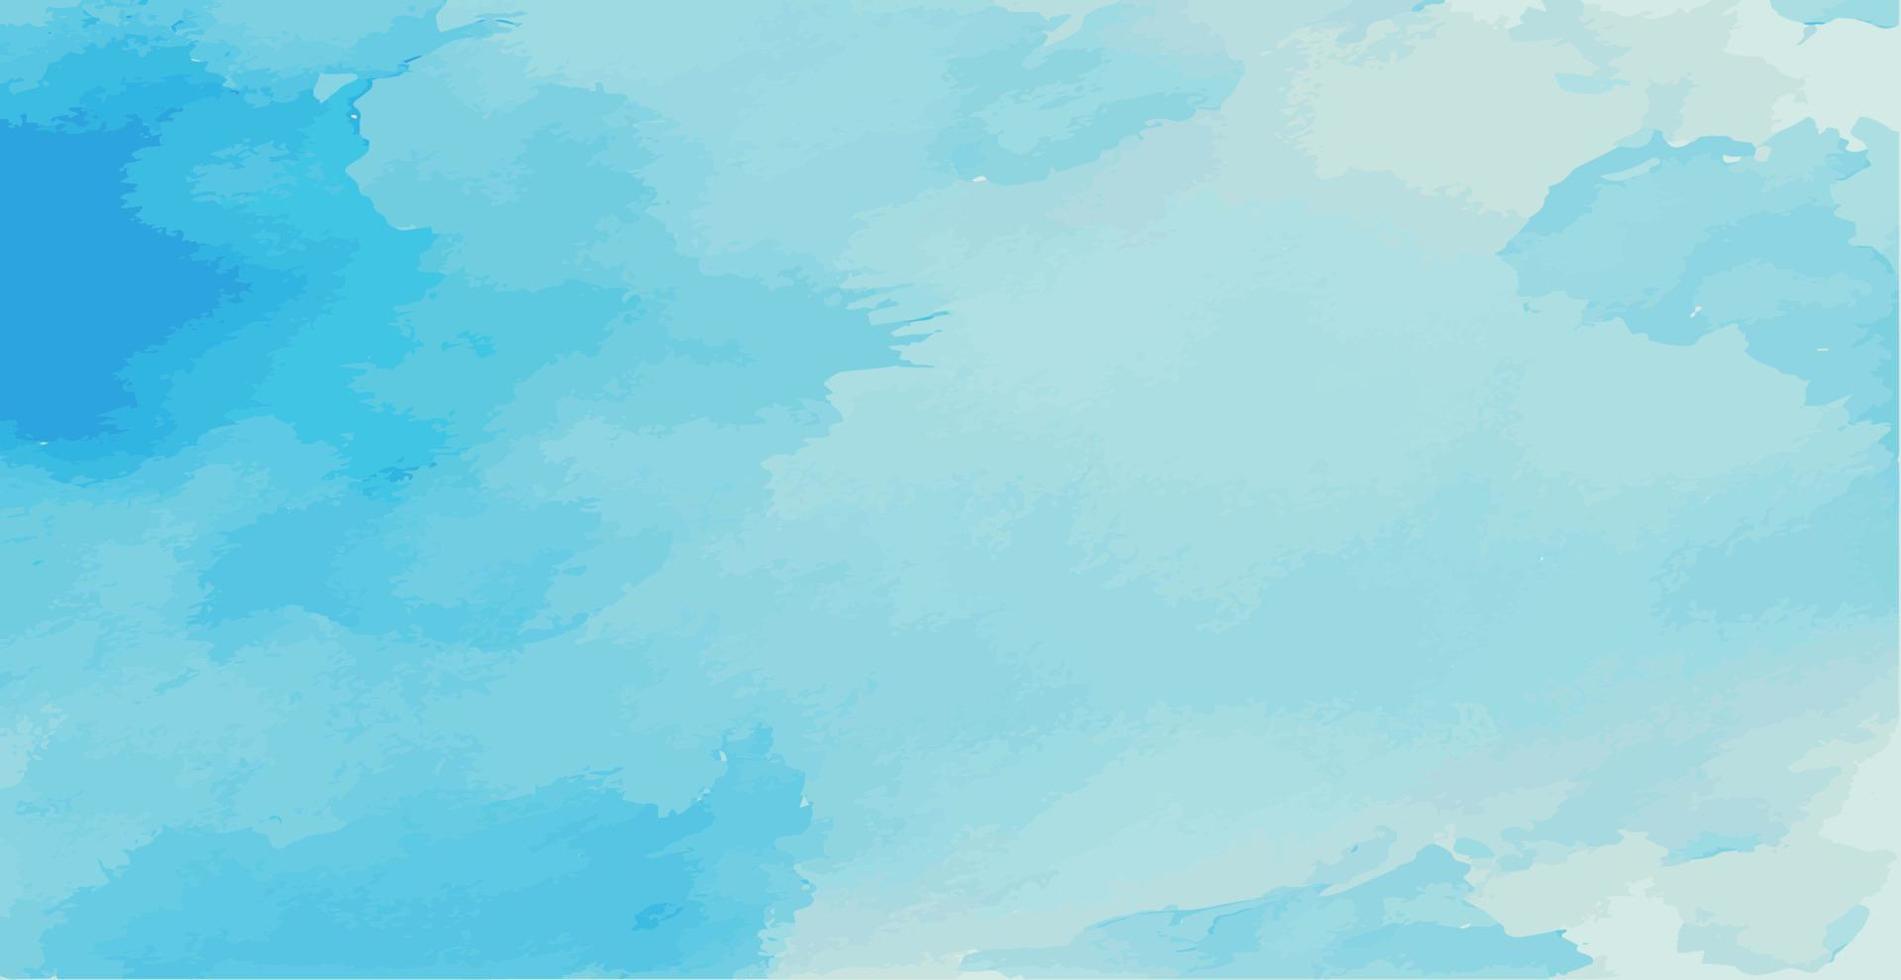 realistisk blå akvarell panorama textur på vit bakgrund - vektor